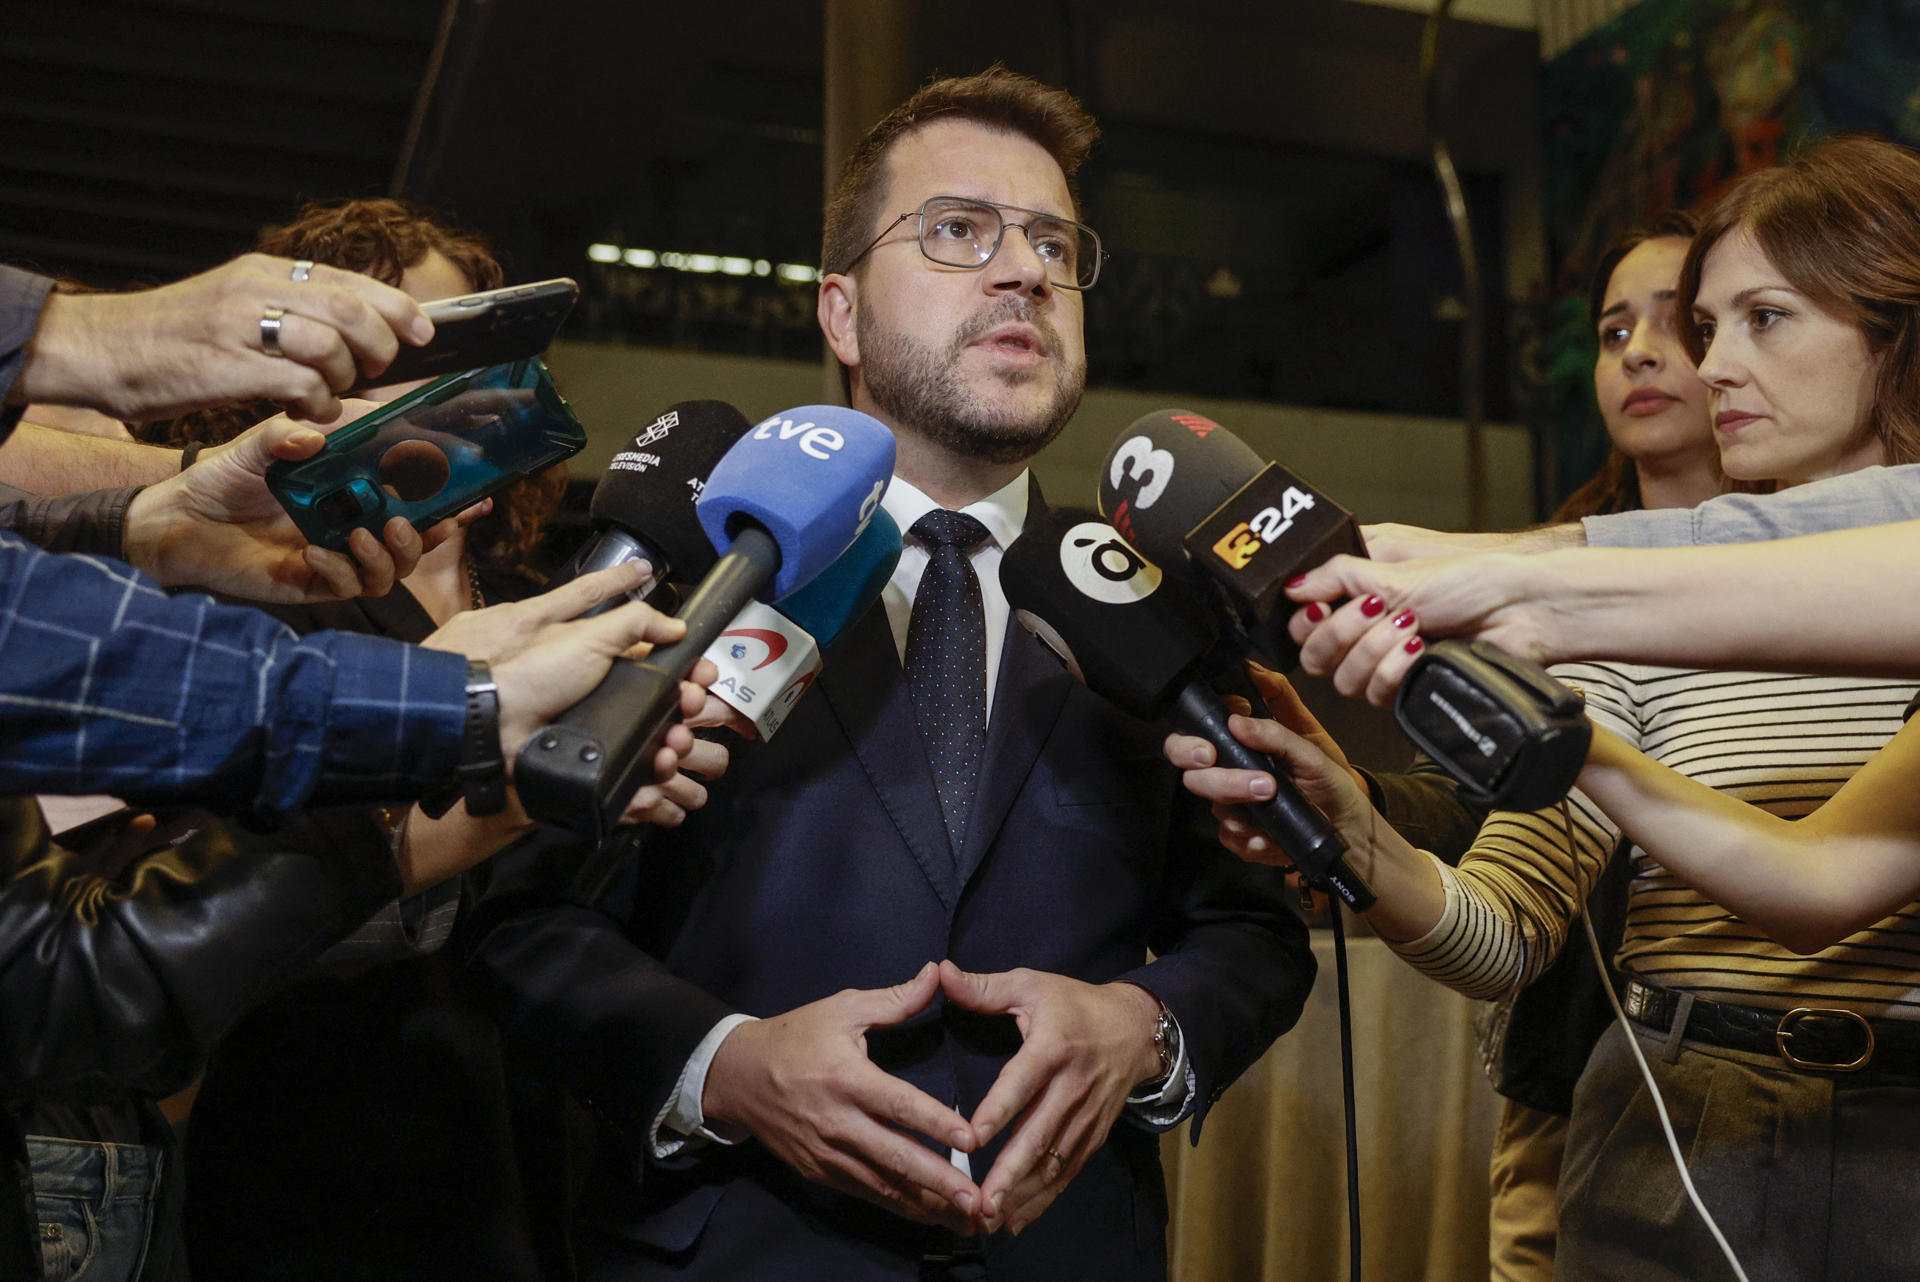 Aragonès defensa que "un cop confirmada l'amnistia" cal seguir treballant "pel referèndum"